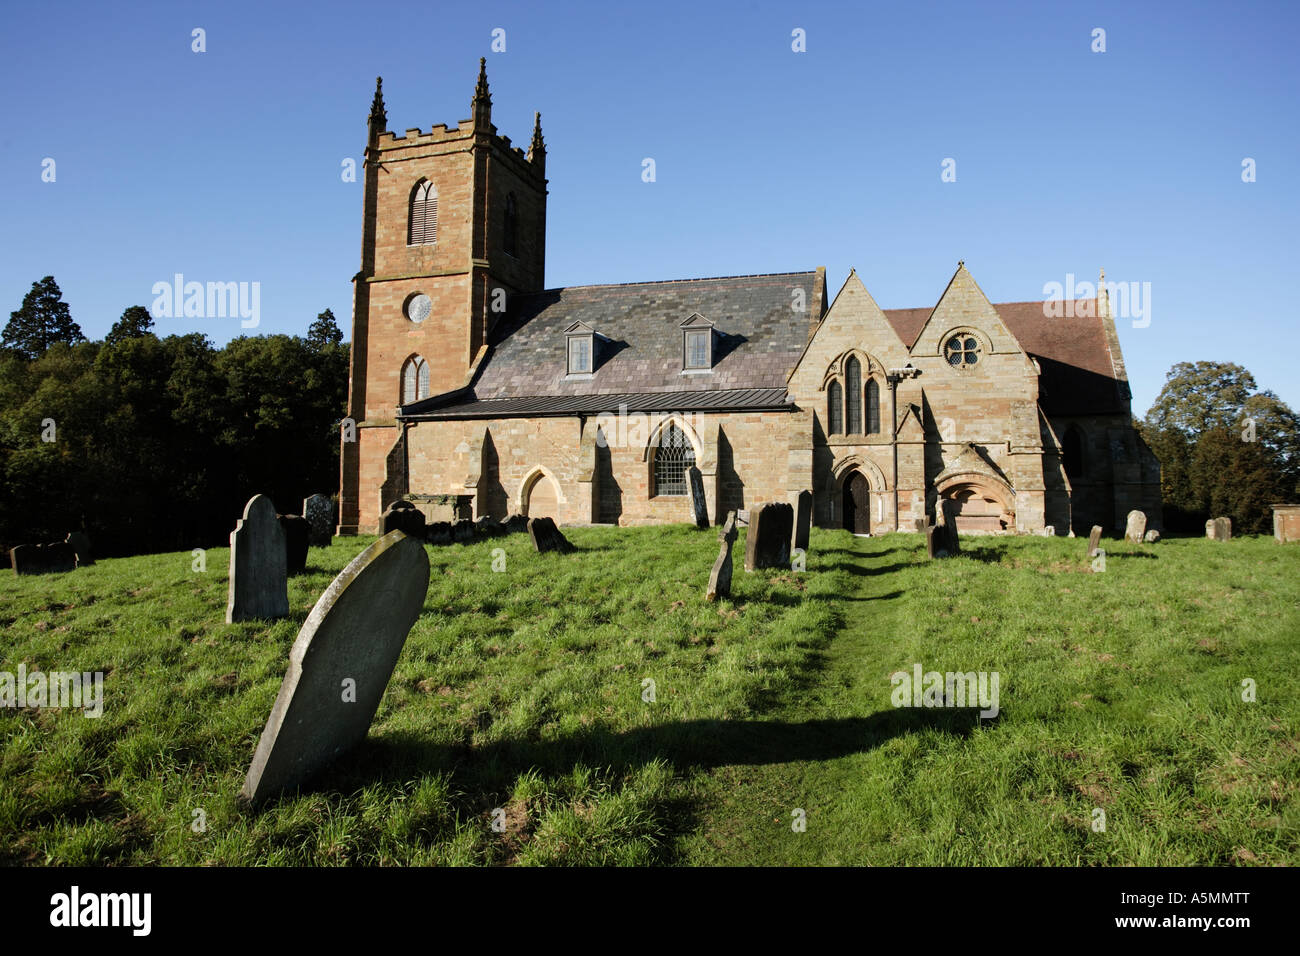 Hanbury chiesa in WORCESTERSHIRE REGNO UNITO scene della BBC radio seriale gli arcieri sono stati registrati qui Foto Stock